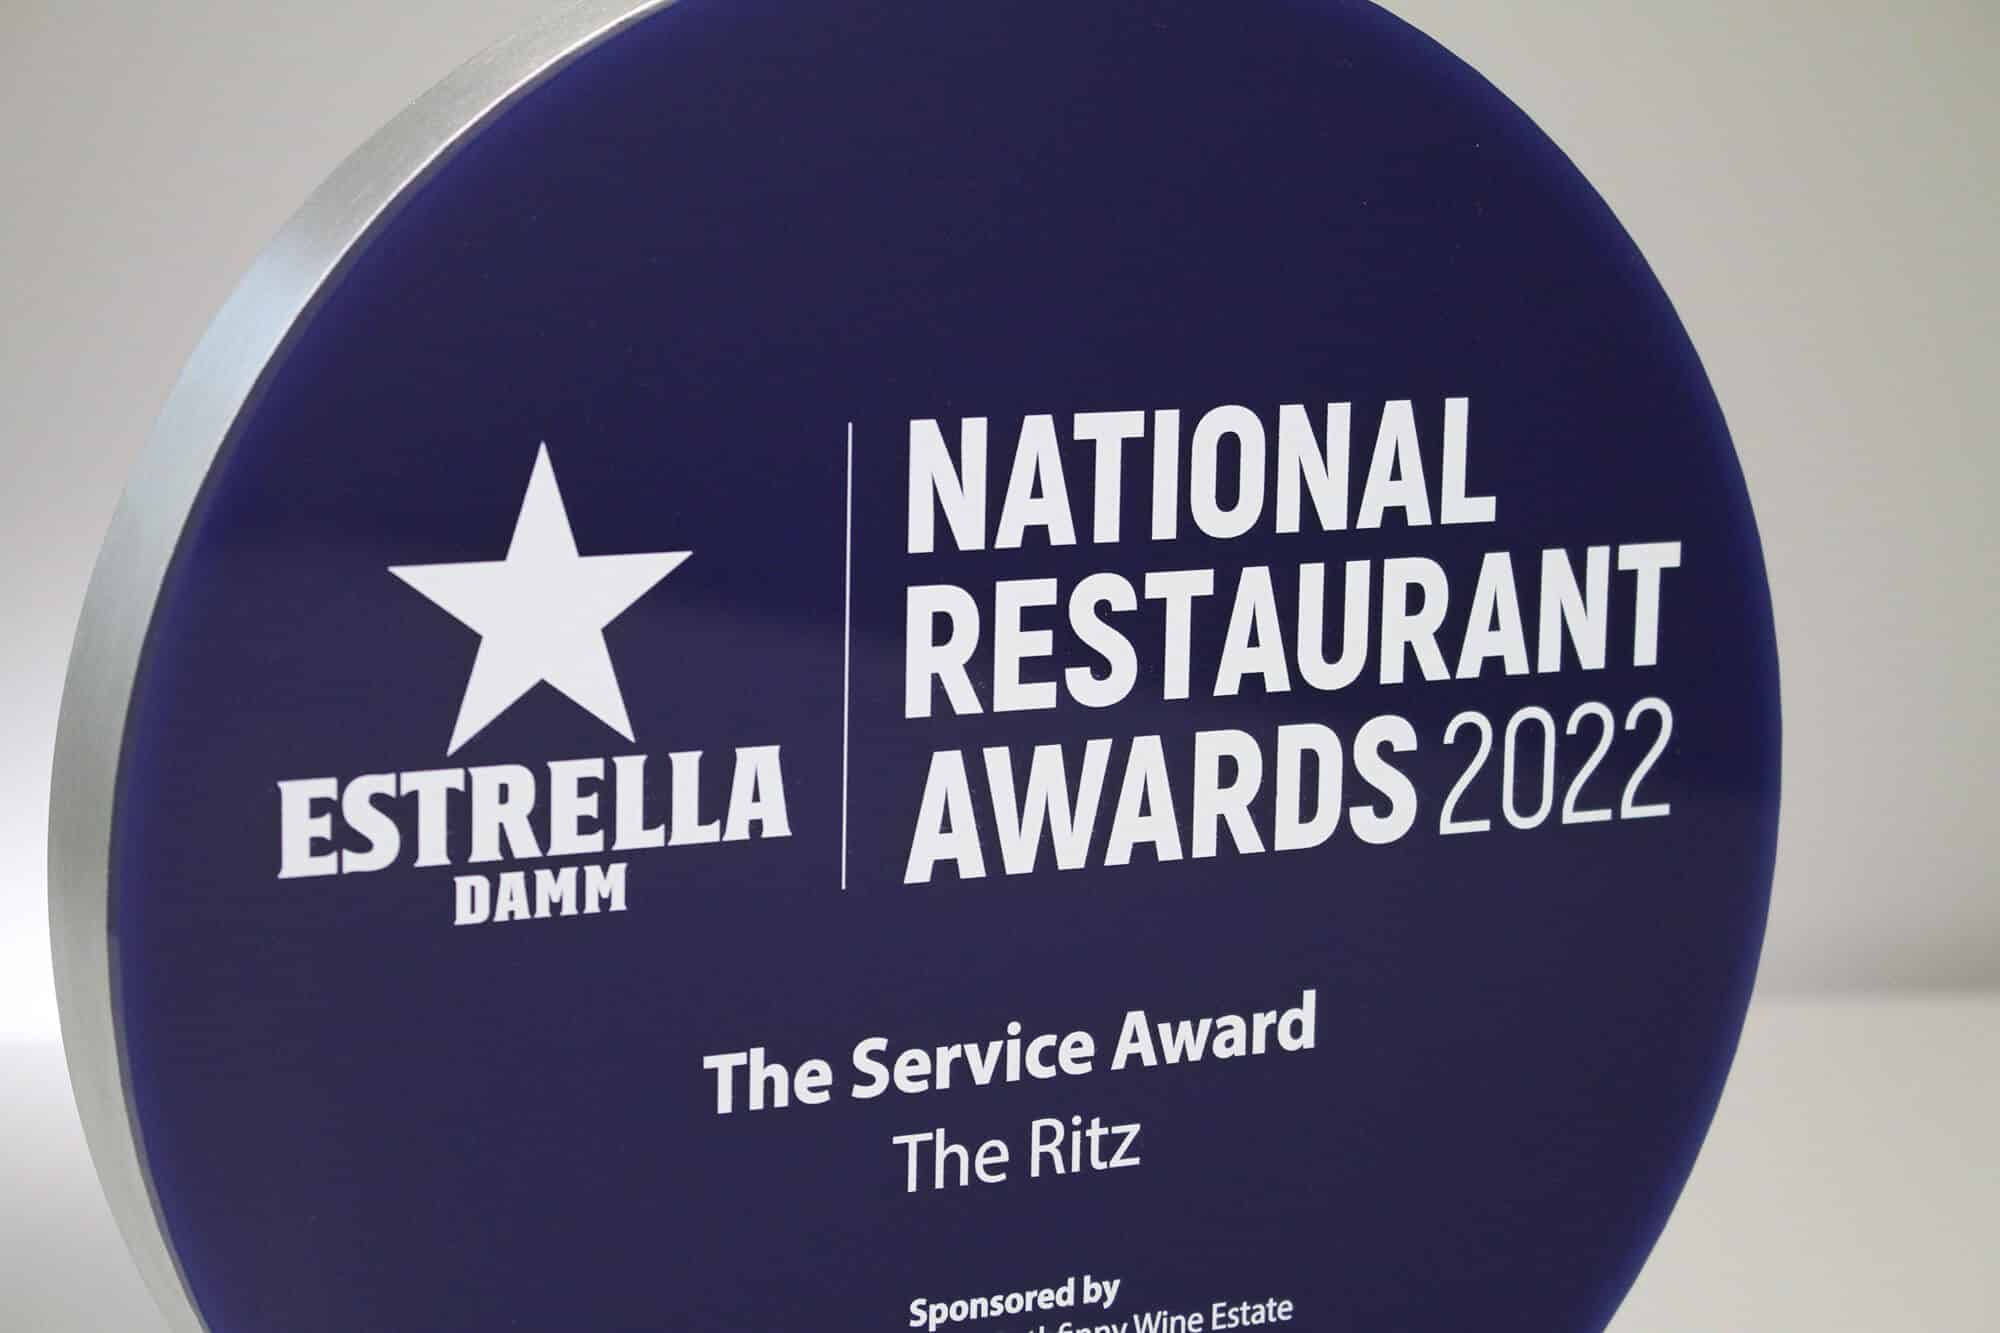 National Restaurant Awards Gaudio Awards